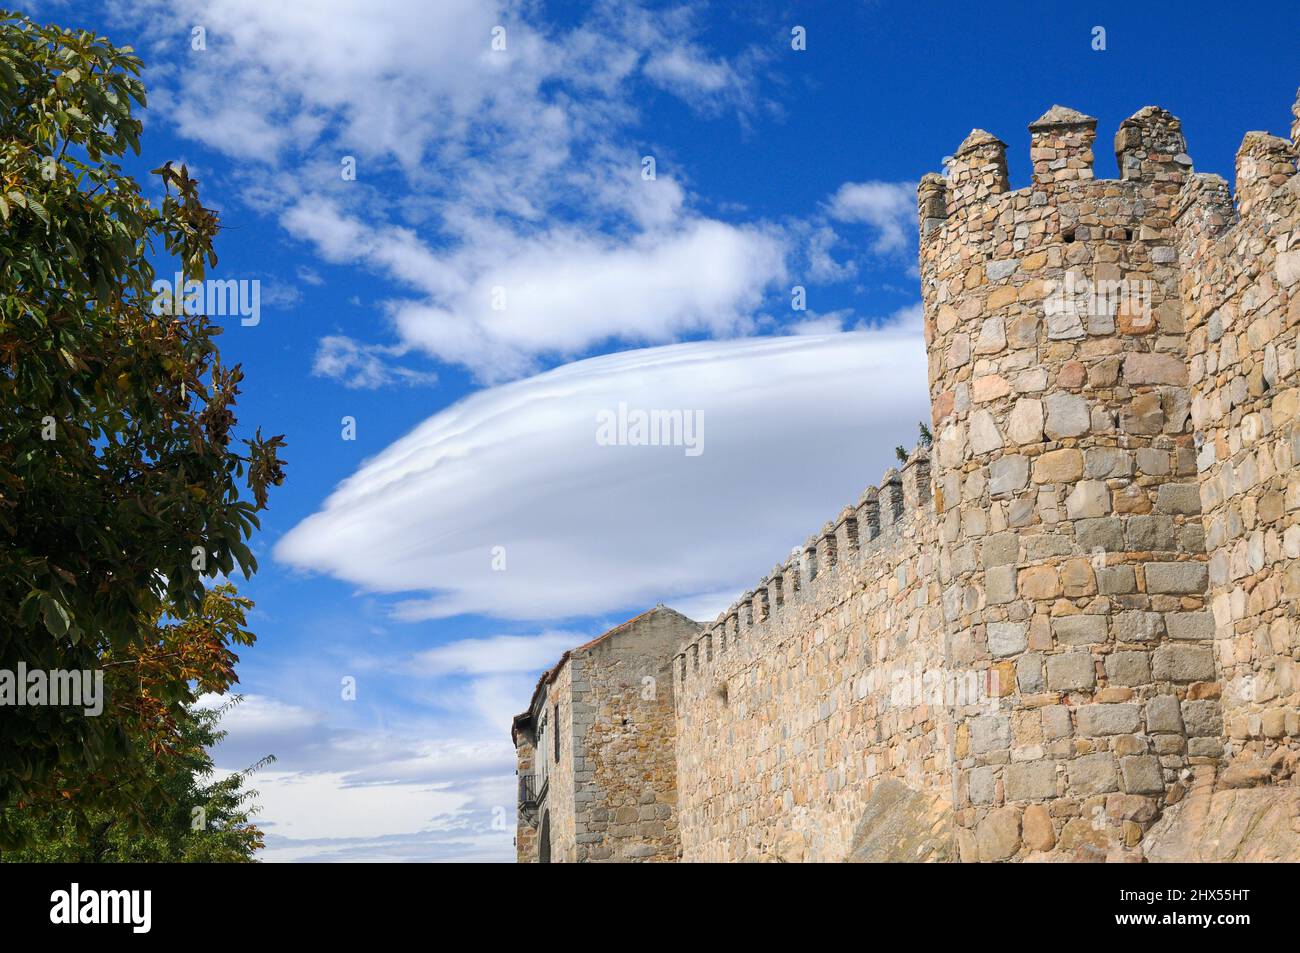 Formazione di nubi lenticolari (Altocumulus lenticularis) sulle mura medievali della città di Avila, Castilla y Leon, Spagna, Europa. Foto Stock